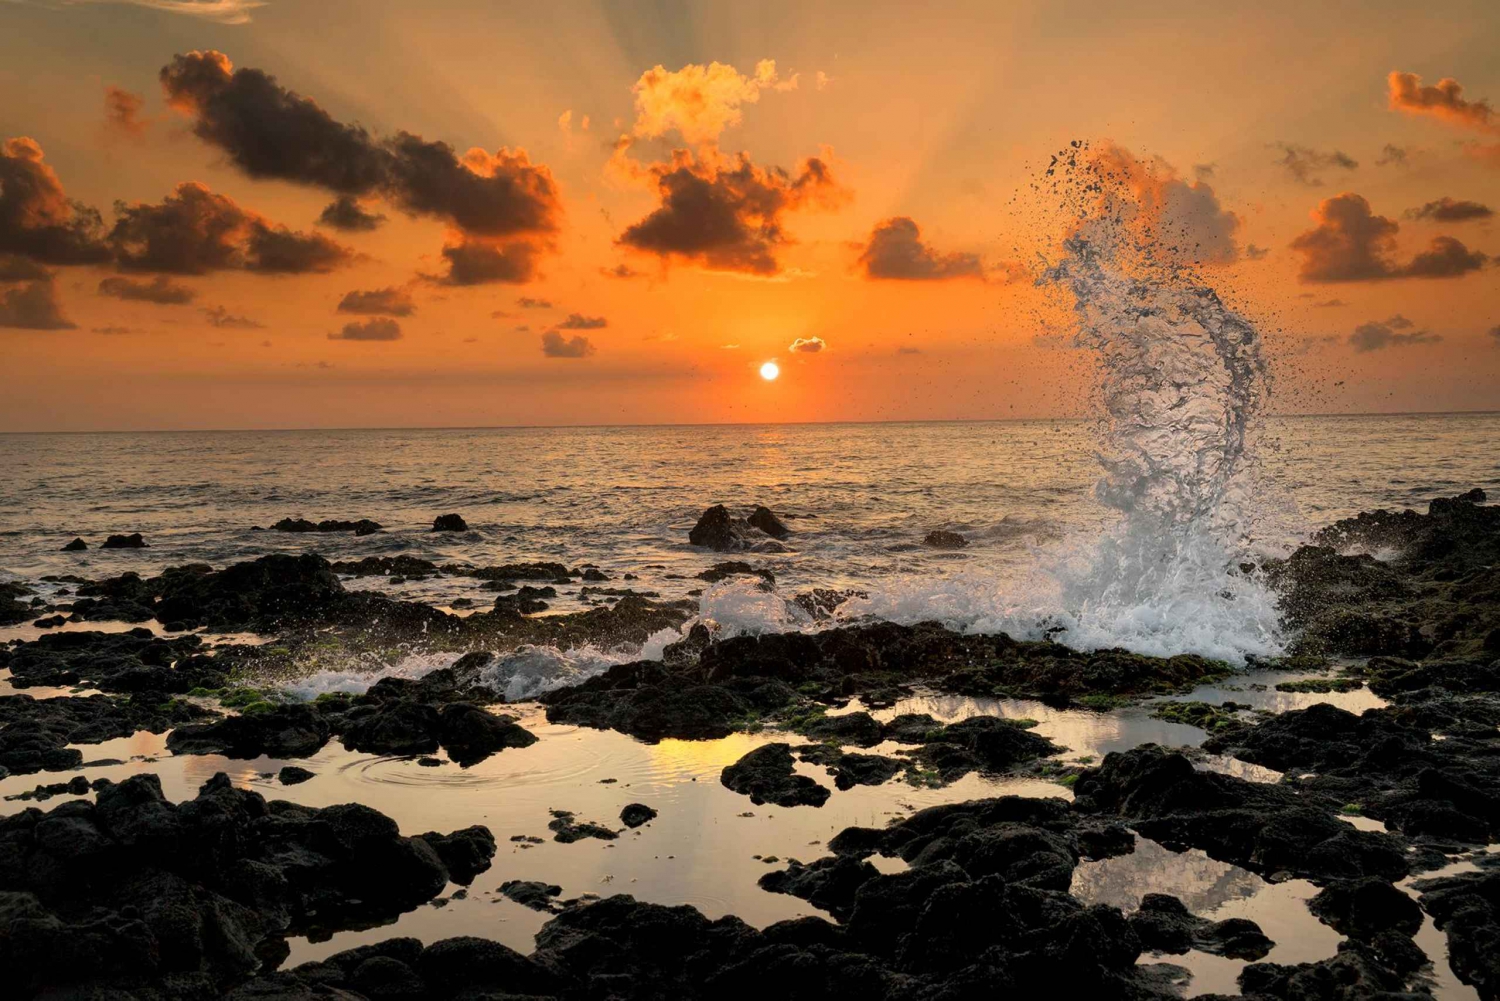 Oahu: excursão fotográfica de meio dia ao nascer do sol saindo de Waikiki